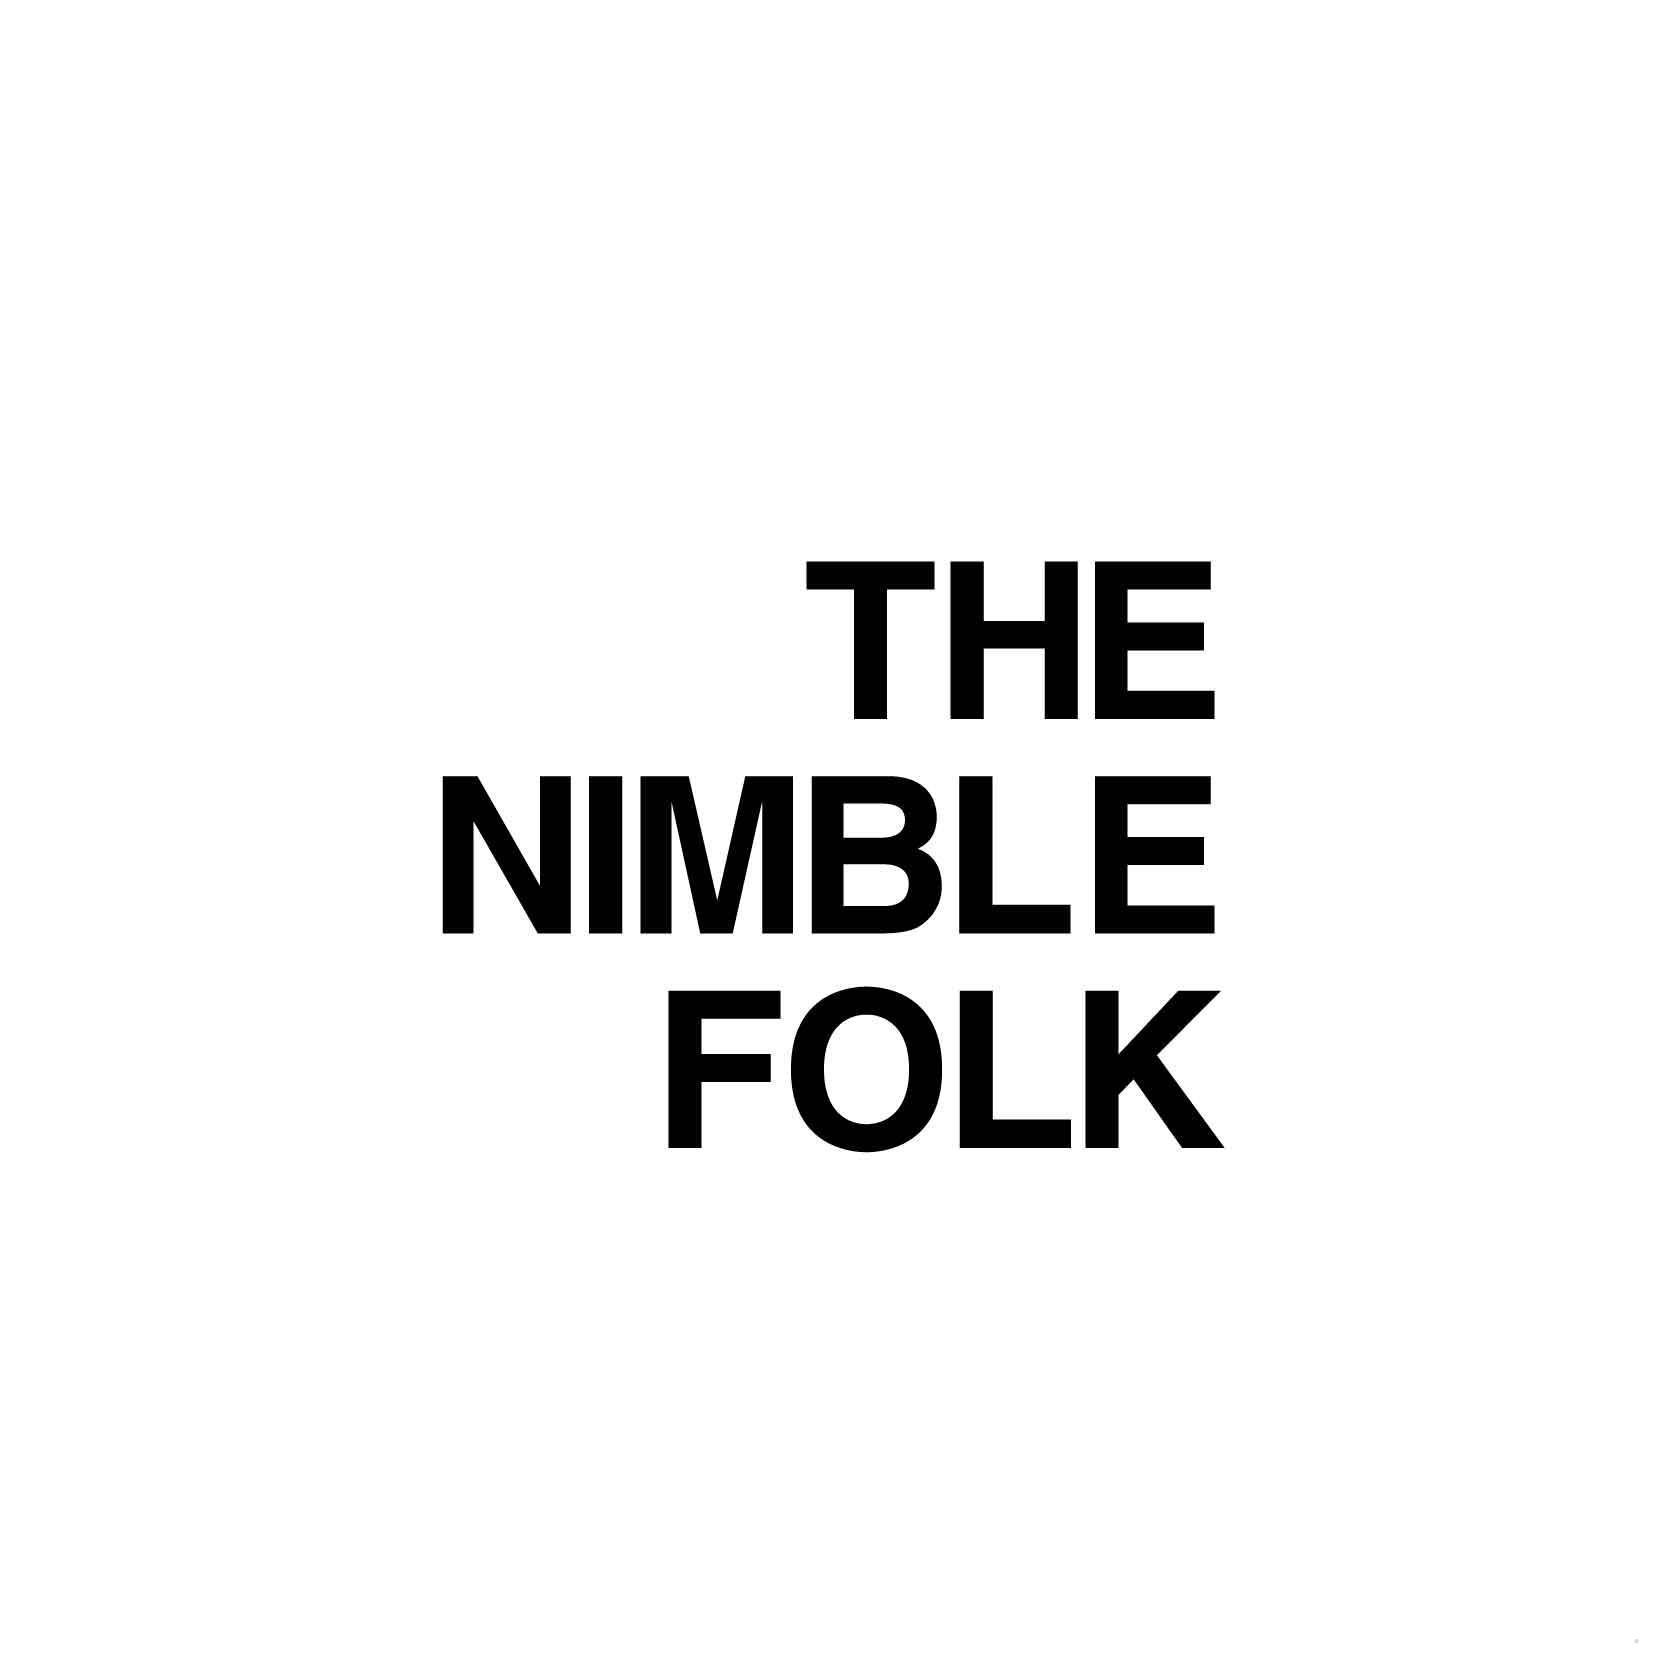 THE NIMBLE FOLK